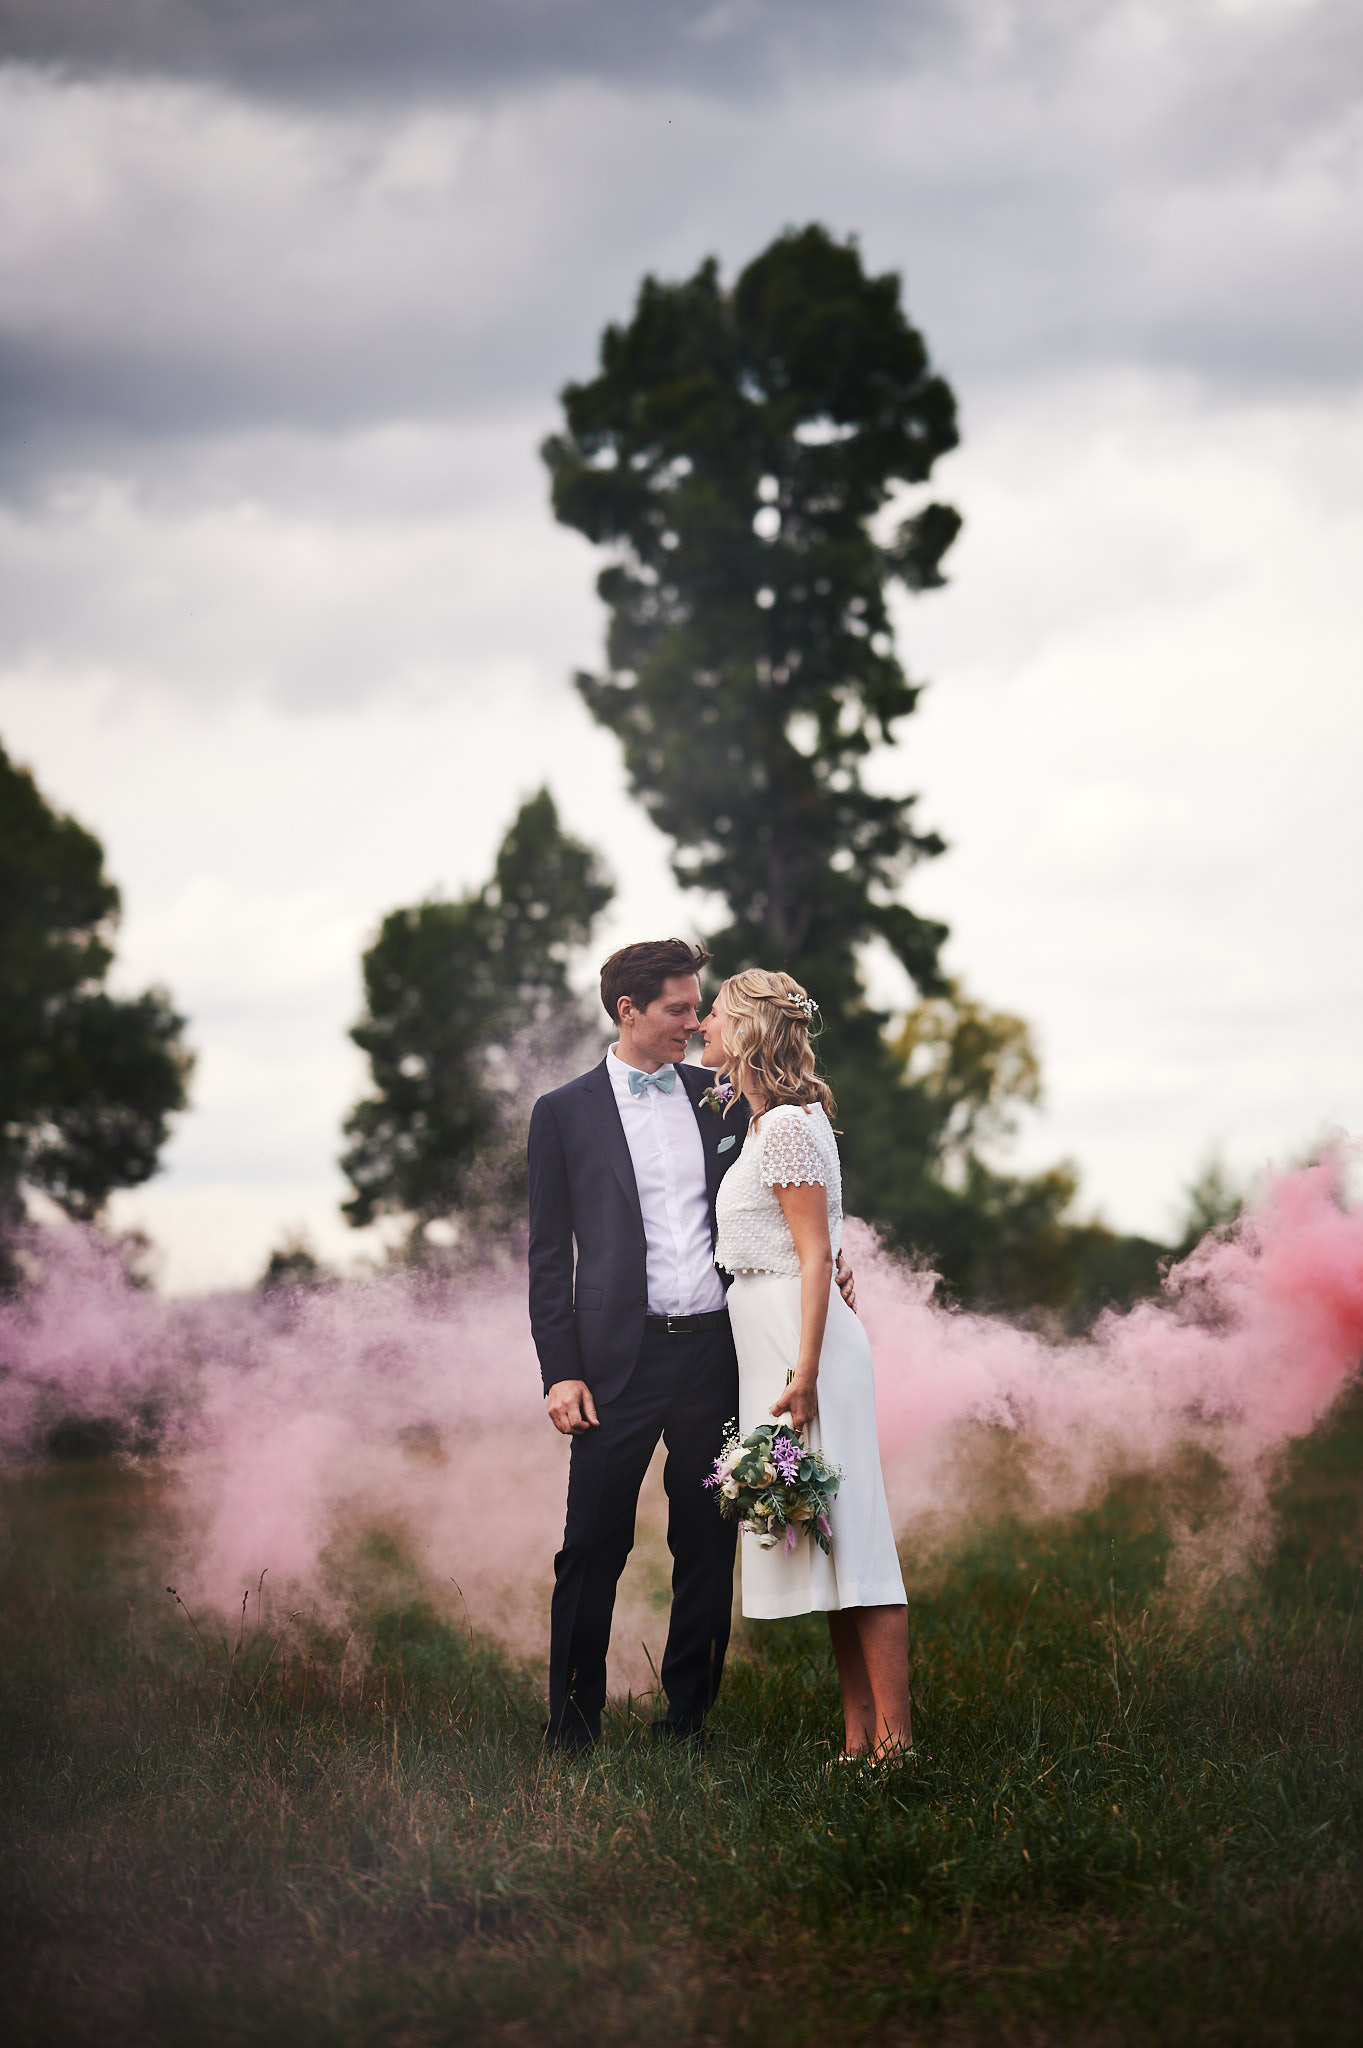 Ein sich umarmendes Paar auf einem Feld mit Schloss Wissen im Hintergrund und rosafarbenem Rauch.